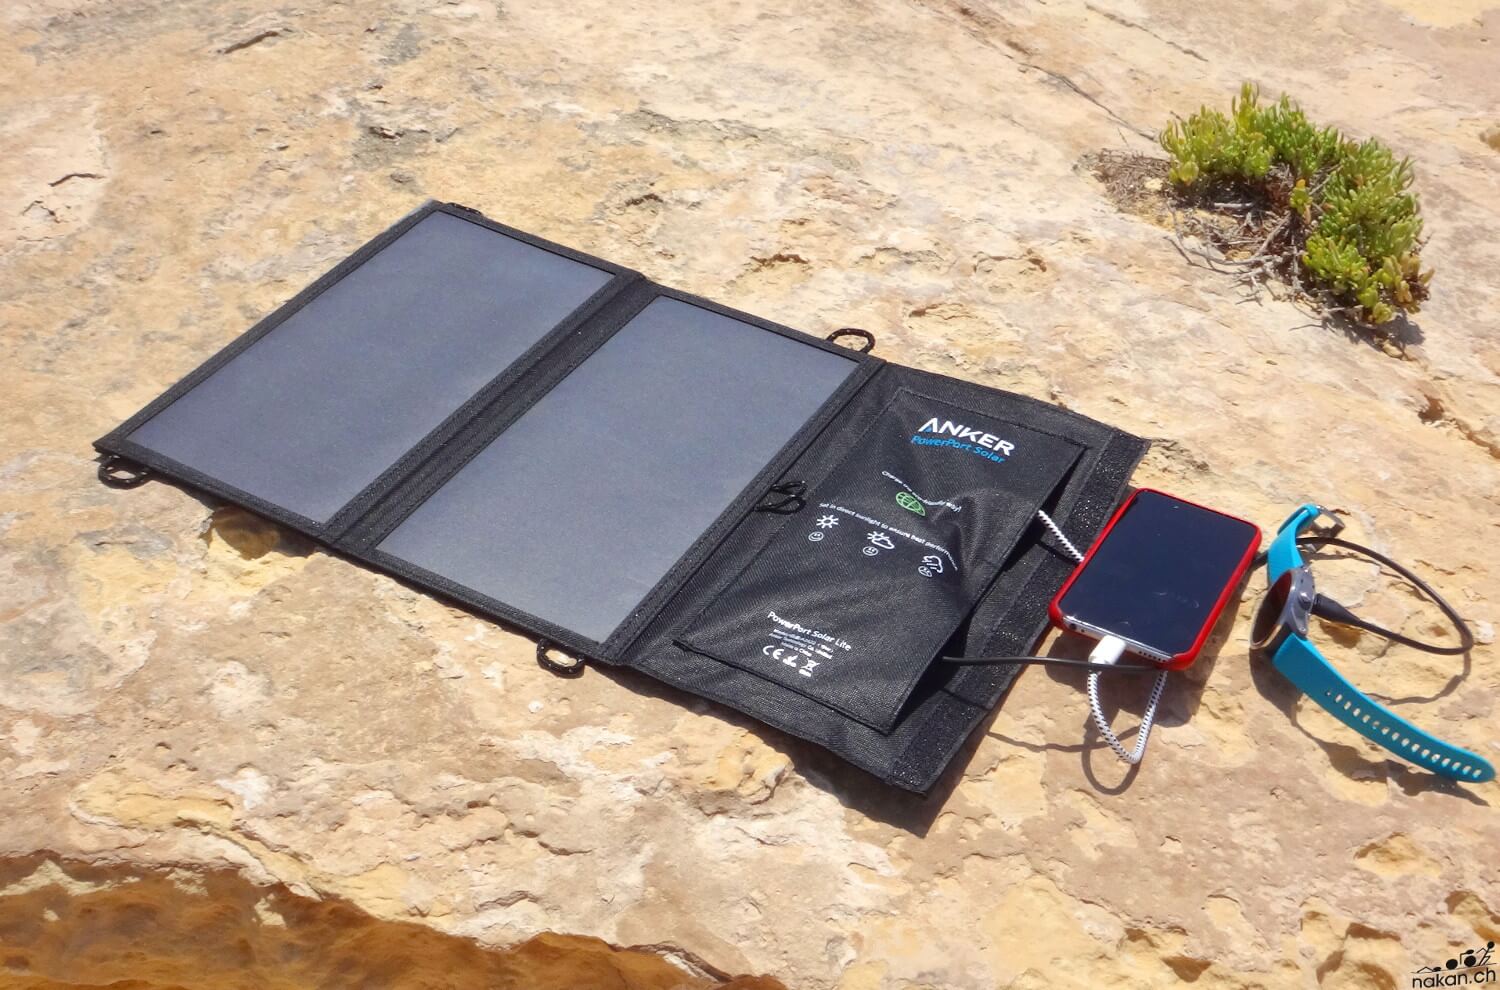 Les bons équipements pour recharger ses gadgets en randonnée